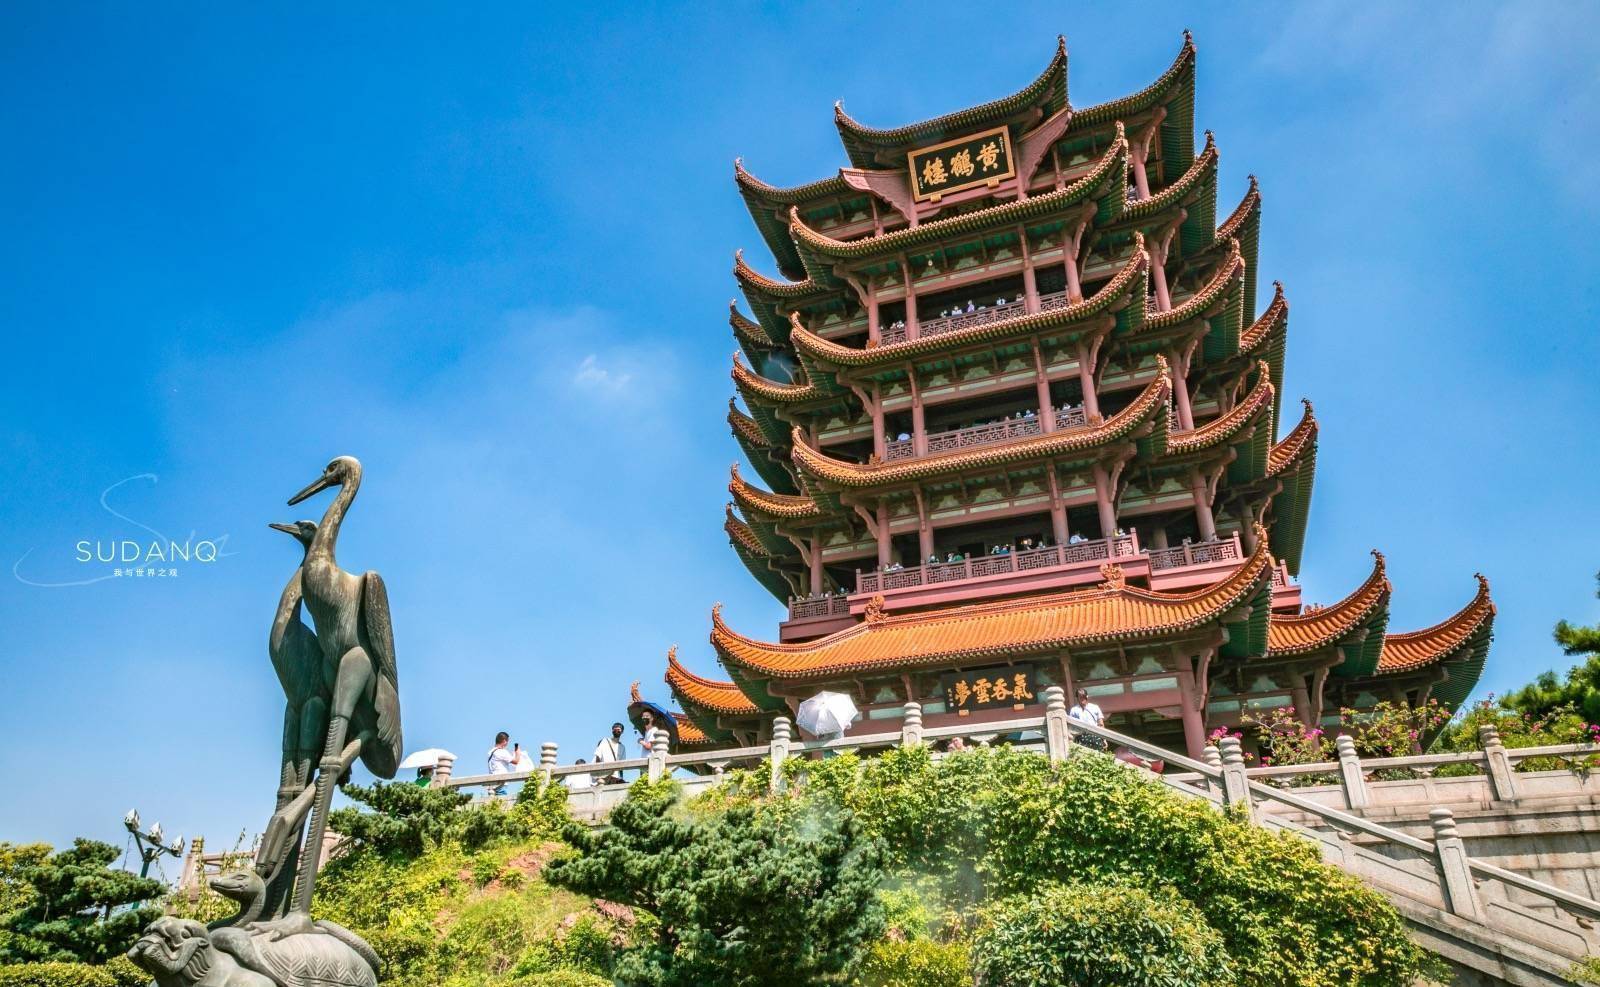 作为武昌最著名的旅游景点,黄鹤楼无疑是武汉旅游的经典代表之一